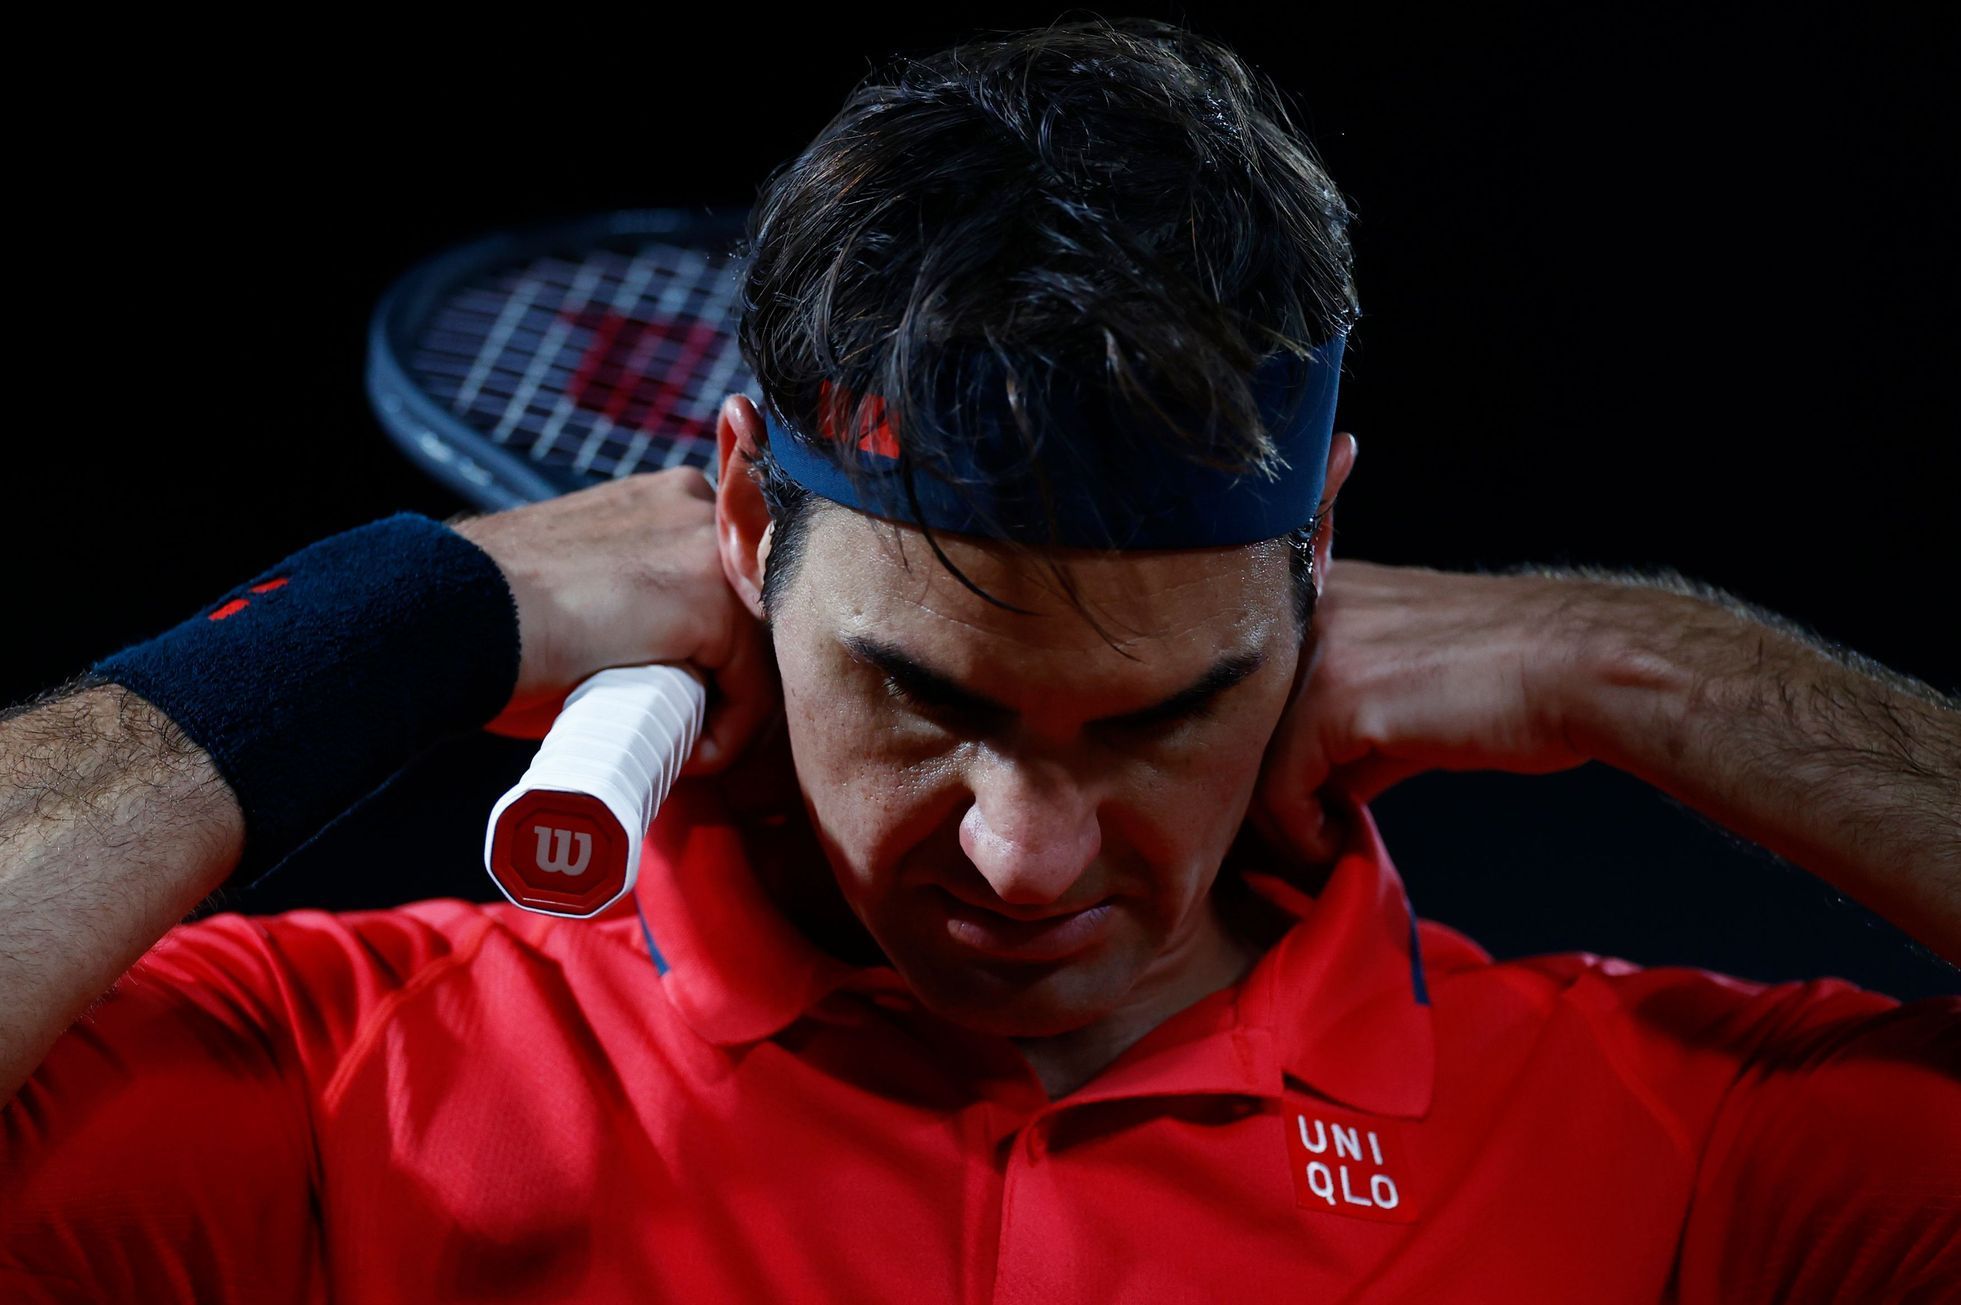 French Open, 3. kolo (Roger Federer)